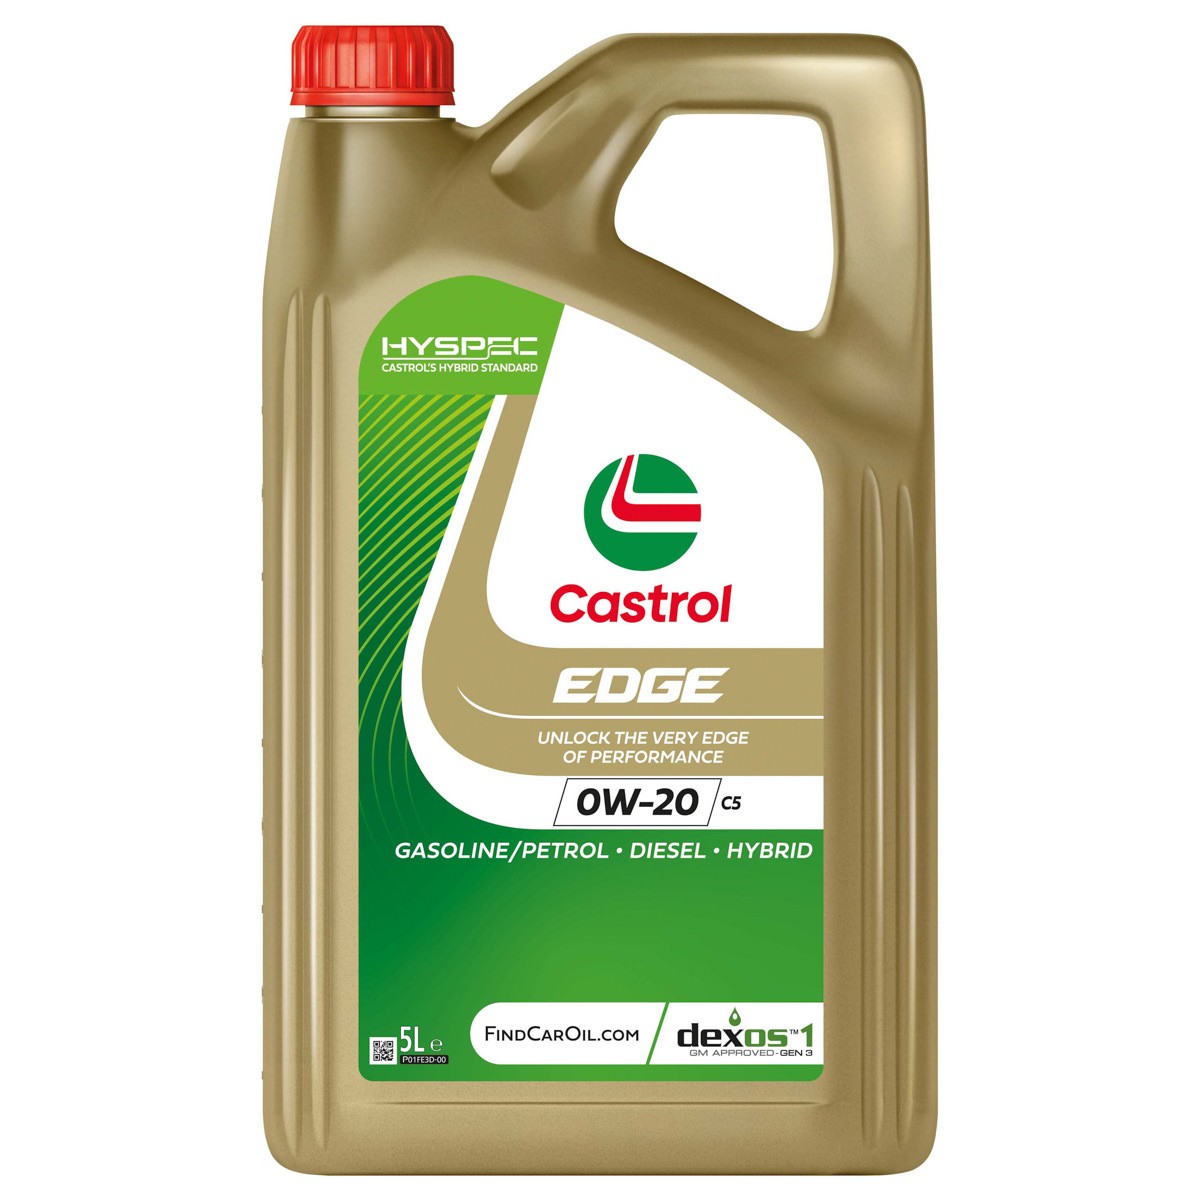 Car oil 0W-20 longlife diesel - 15F6EB CASTROL EDGE, C5